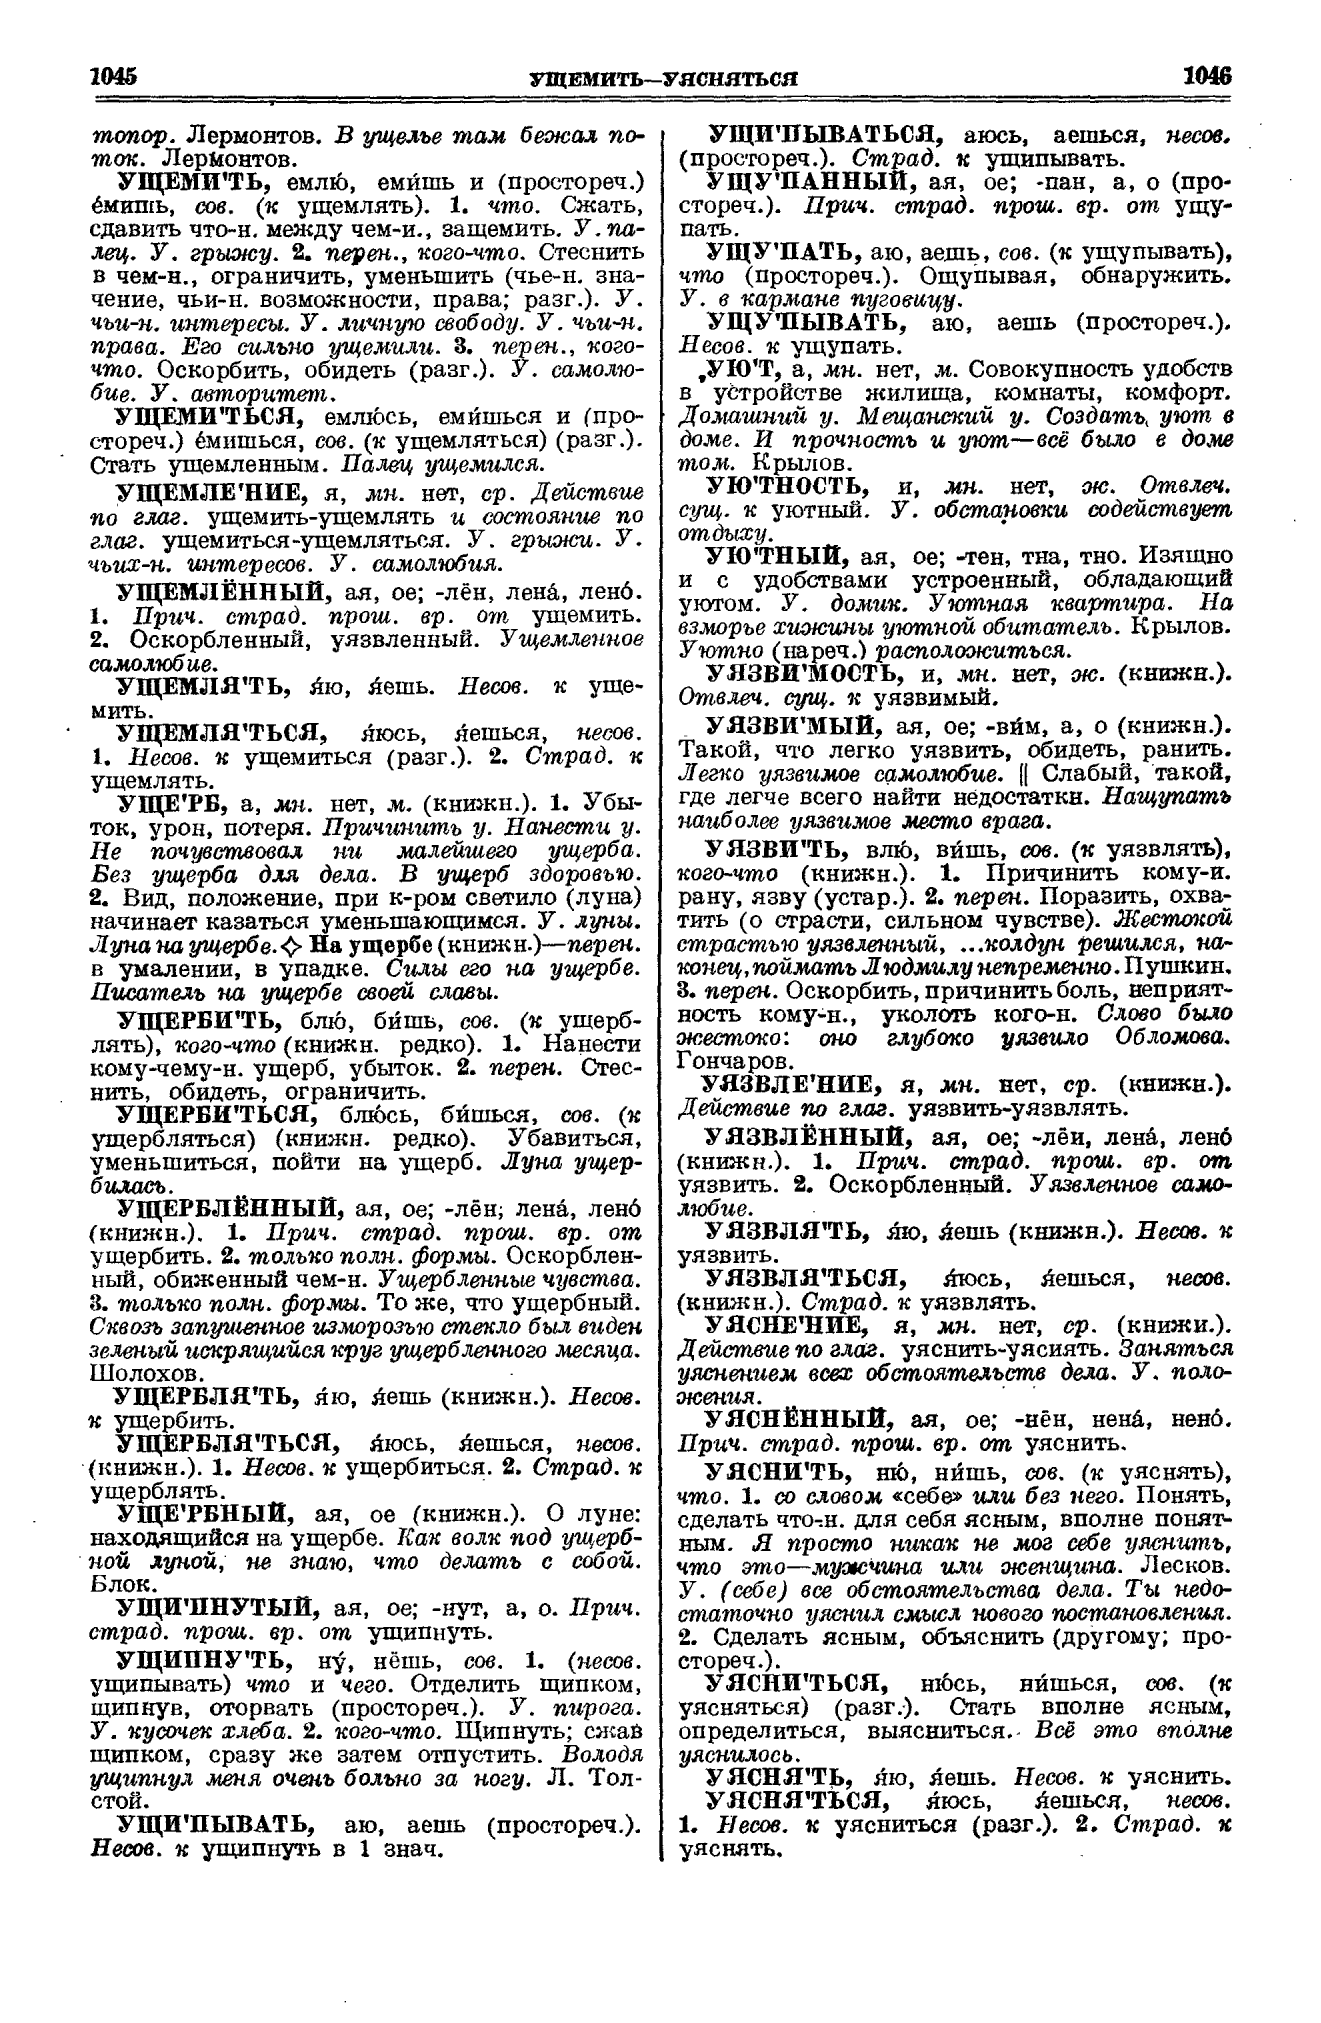 Фотокопия pdf / скан страницы 523 толкового словаря Ушакова (том 1)